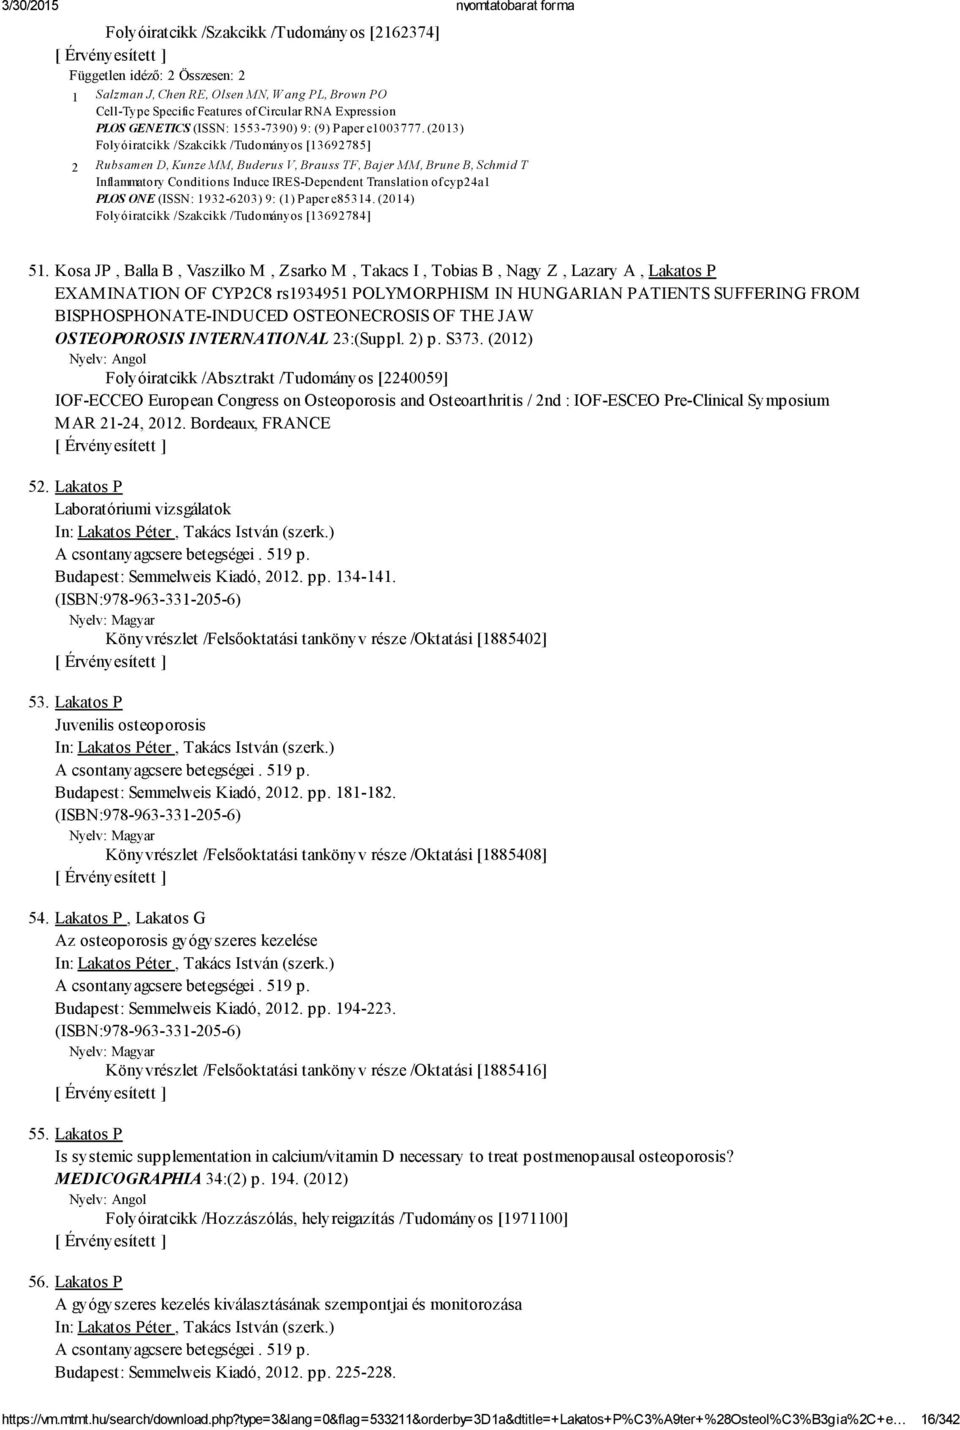 (2013) Folyóiratcikk /Szakcikk /Tudományos [13692785] 2 Rubsamen D, Kunze MM, Buderus V, Brauss TF, Bajer MM, Brune B, Schmid T Inflammatory Conditions Induce IRES Dependent Translation of cyp24a1